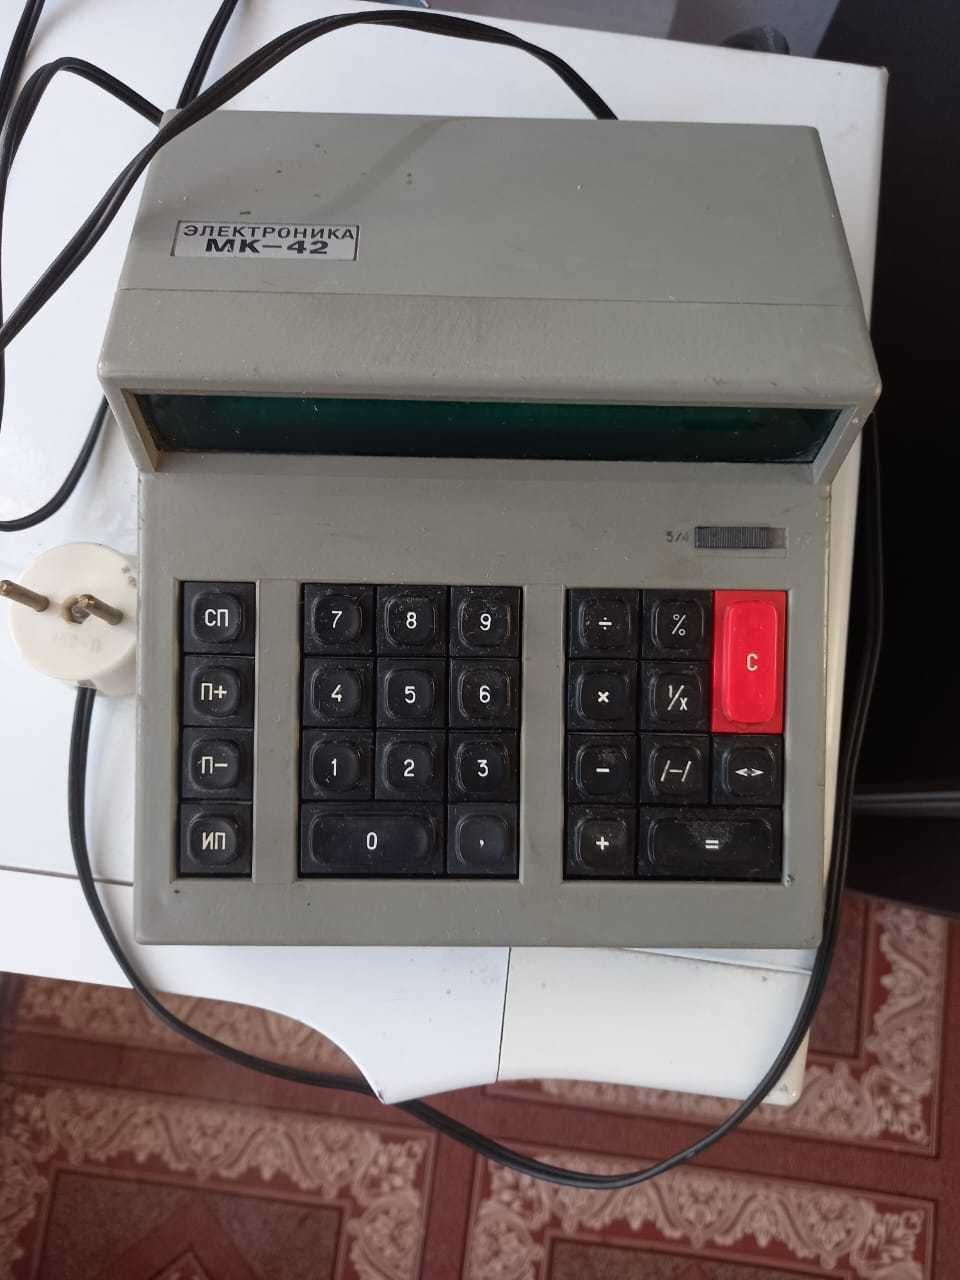 Калькулятор- "Электроника"  МК 42  СССР, цена 10 000 тыс. тенге